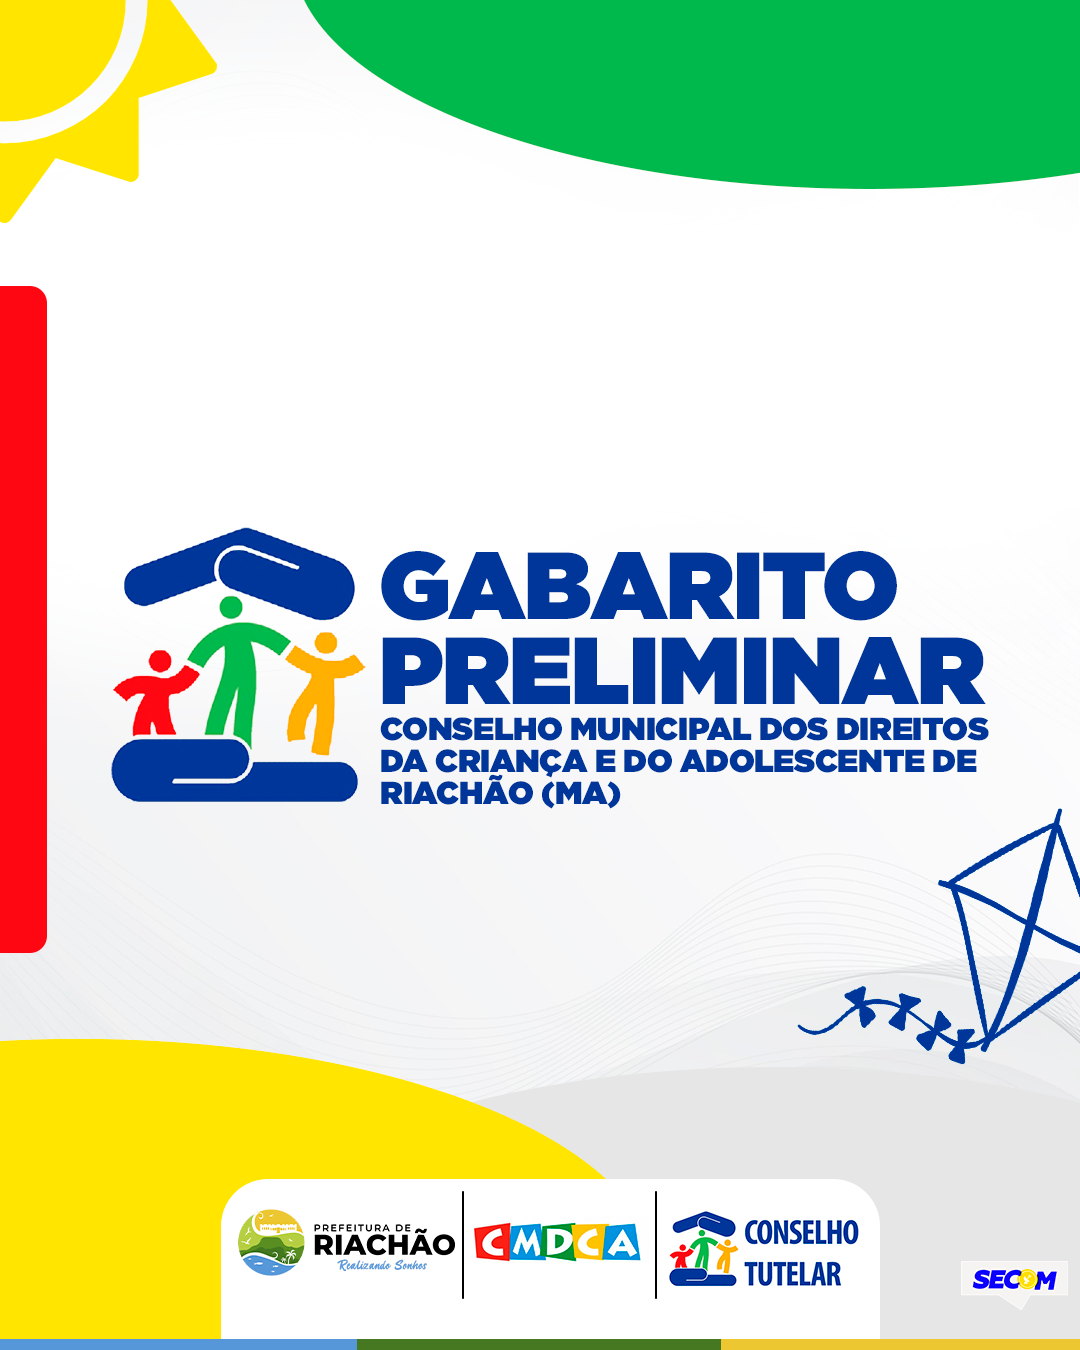 Gabarito Preliminar - Conselho Municipal dos Direitos da Criança e do Adolescente de Riachão (MA)